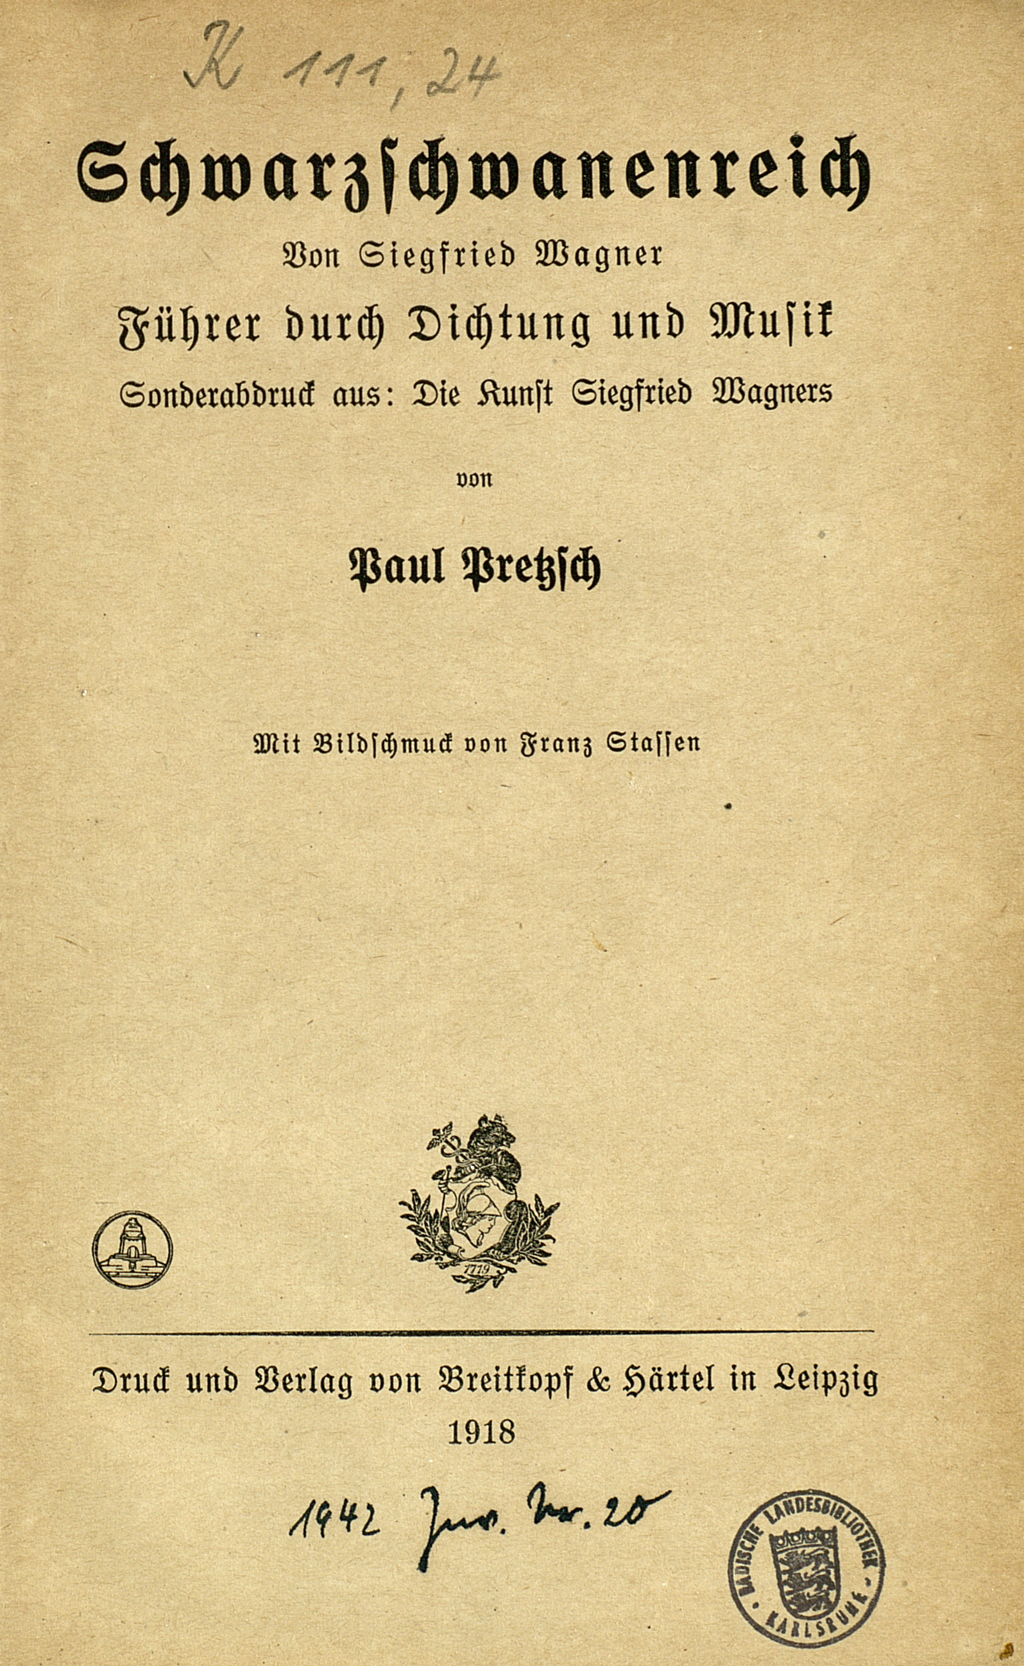 Zu sehen ist das Titelblatt von Pauls Pretzschs Buchzur Oper "Schwarzschwanenreich" von Siegfried Wagner.